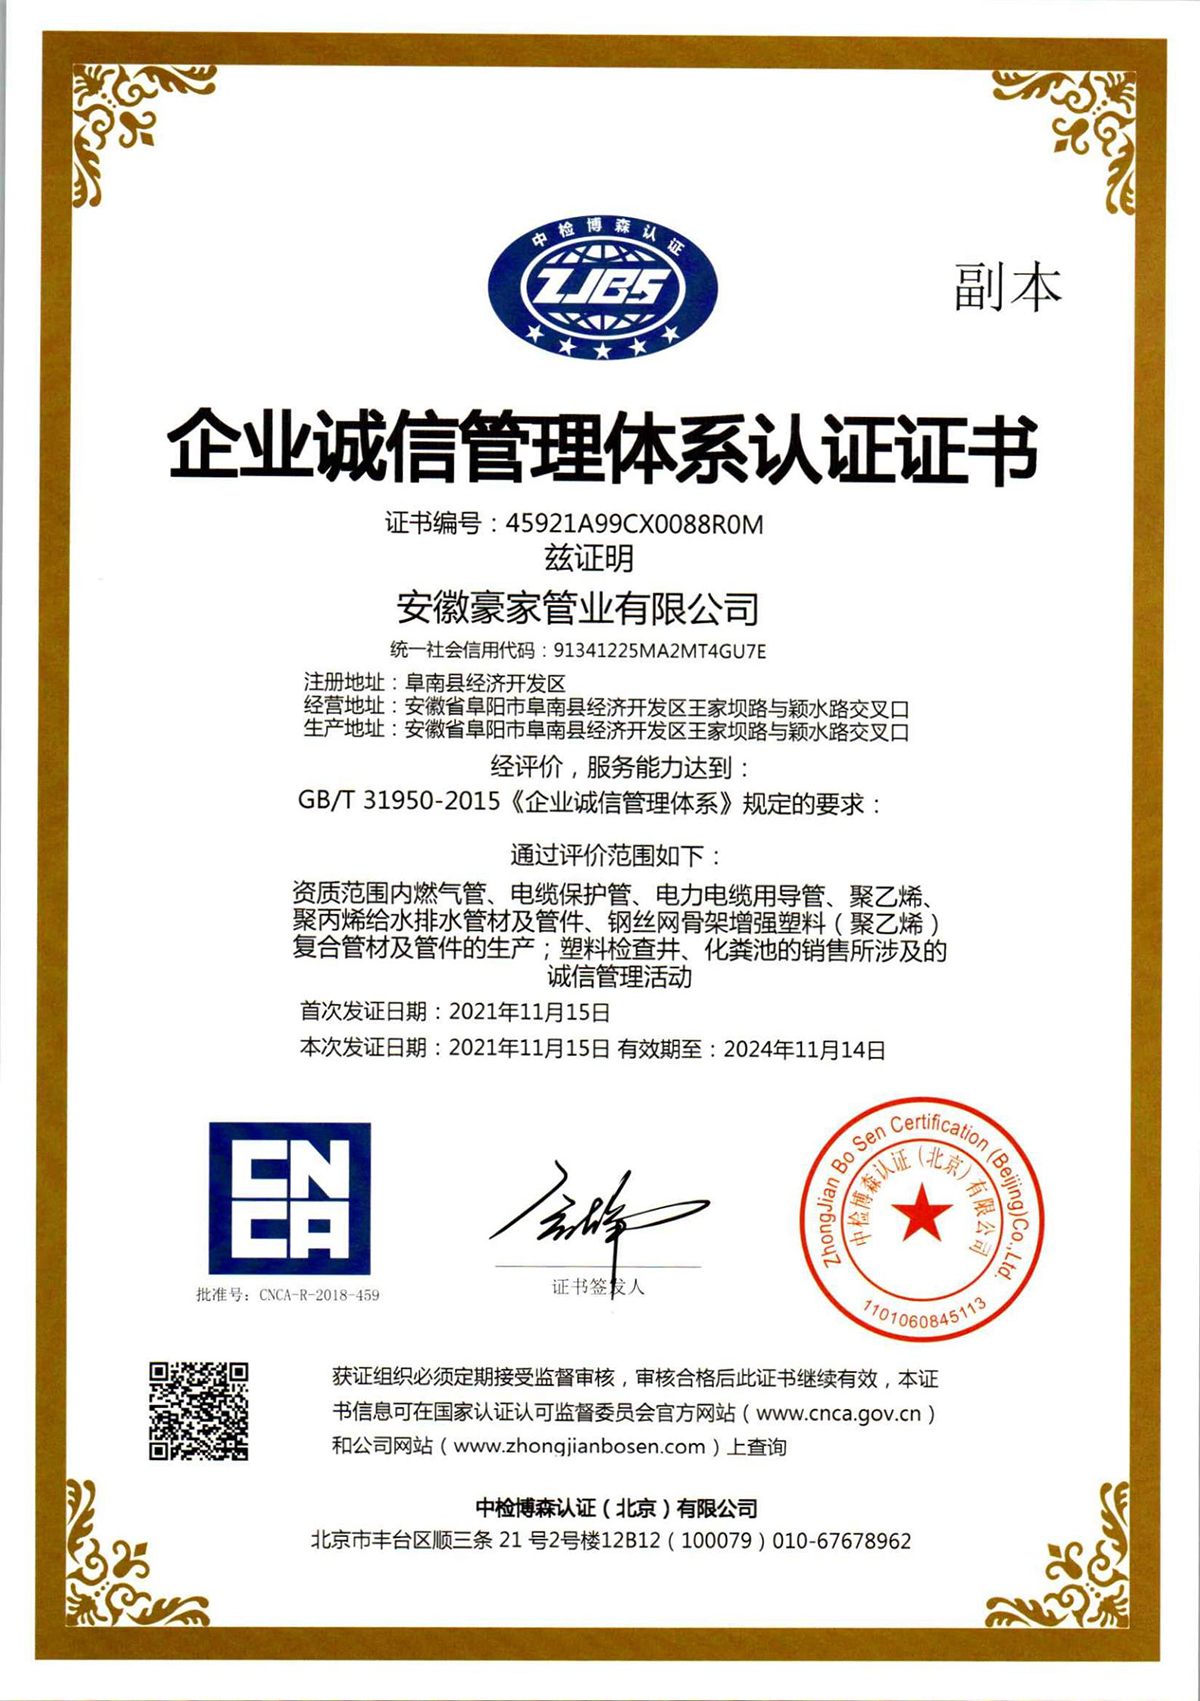 
荣获《企业诚信管理体系认证证书》